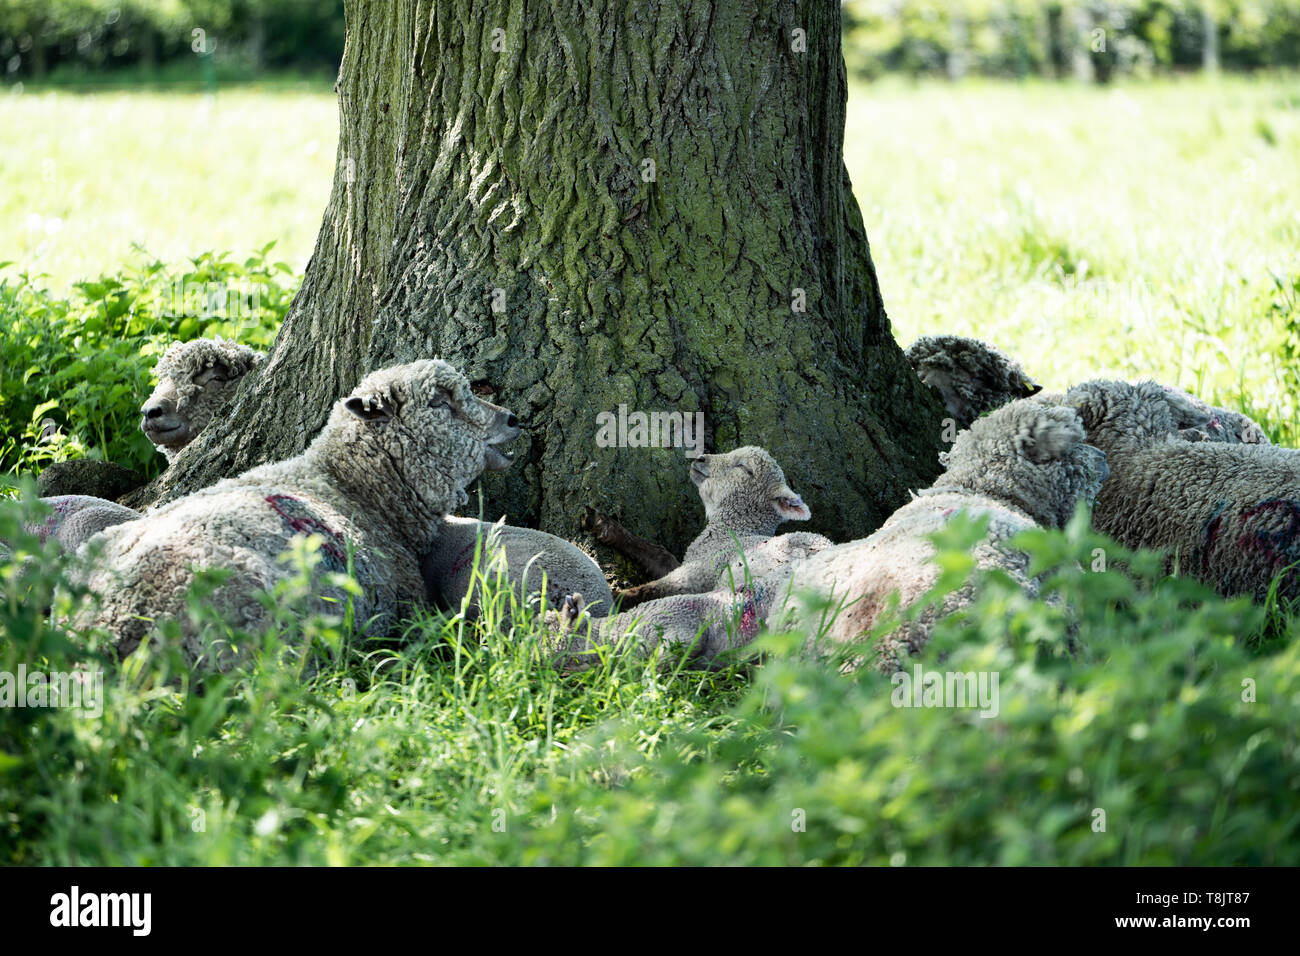 Un rebaño de ovejas de Southdown incluyendo adultos y corderos refugio del sol bajo un árbol grande, REINO UNIDO Foto de stock